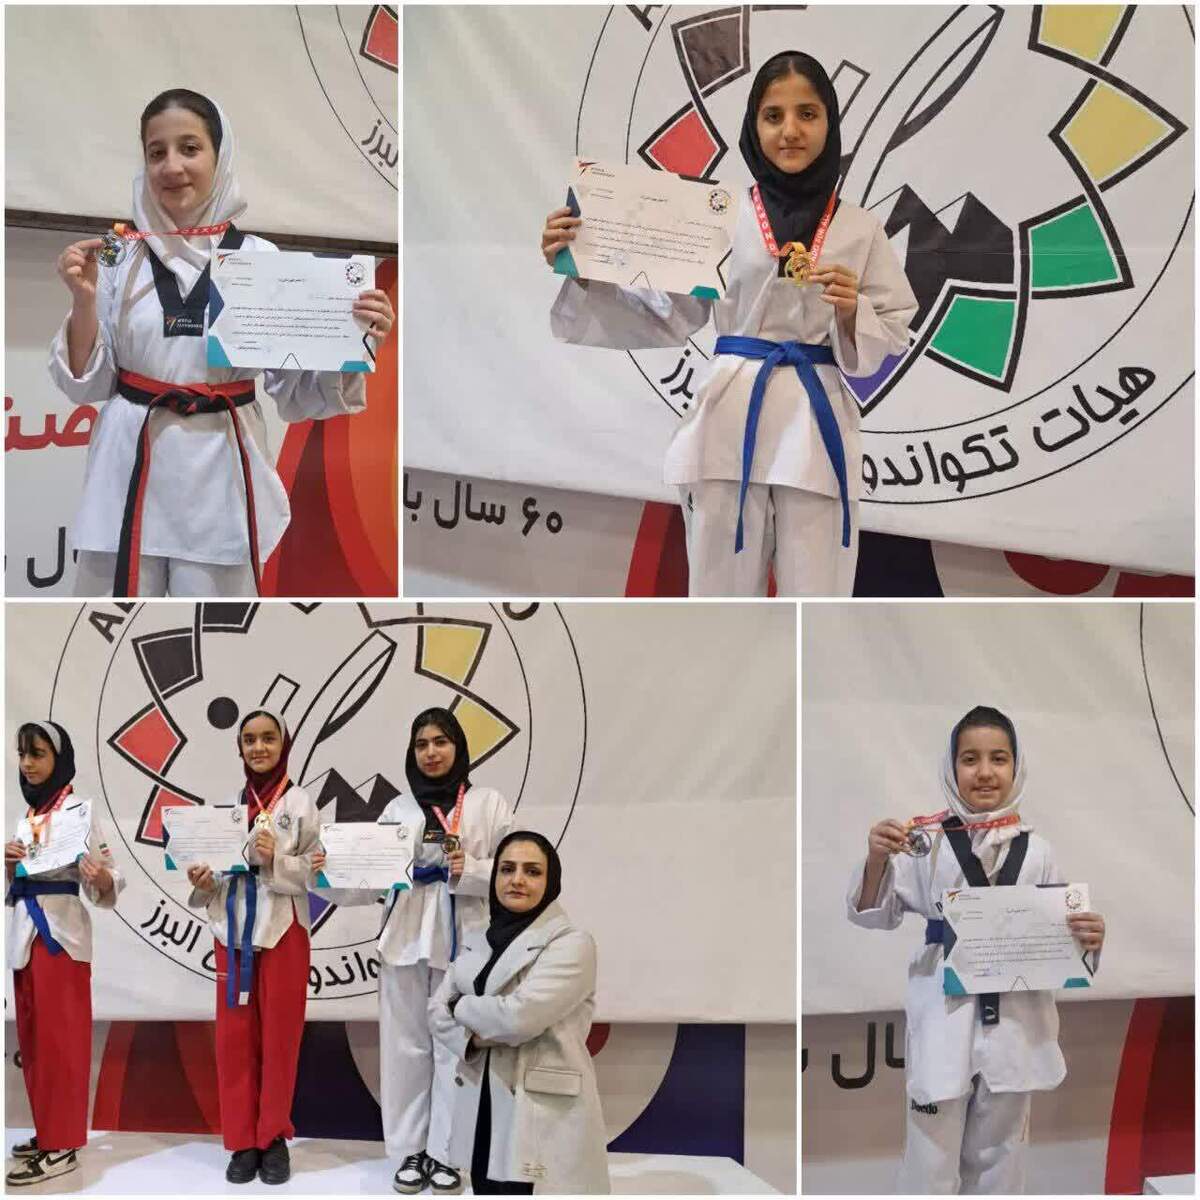 رقابتهای قهرمانی پومسه در بخش دختران روز چهارشنبه و پنج شنبه ۱۶ و ۱۷ اسفند در خانه تکواندو استان البرز برگزار شد.